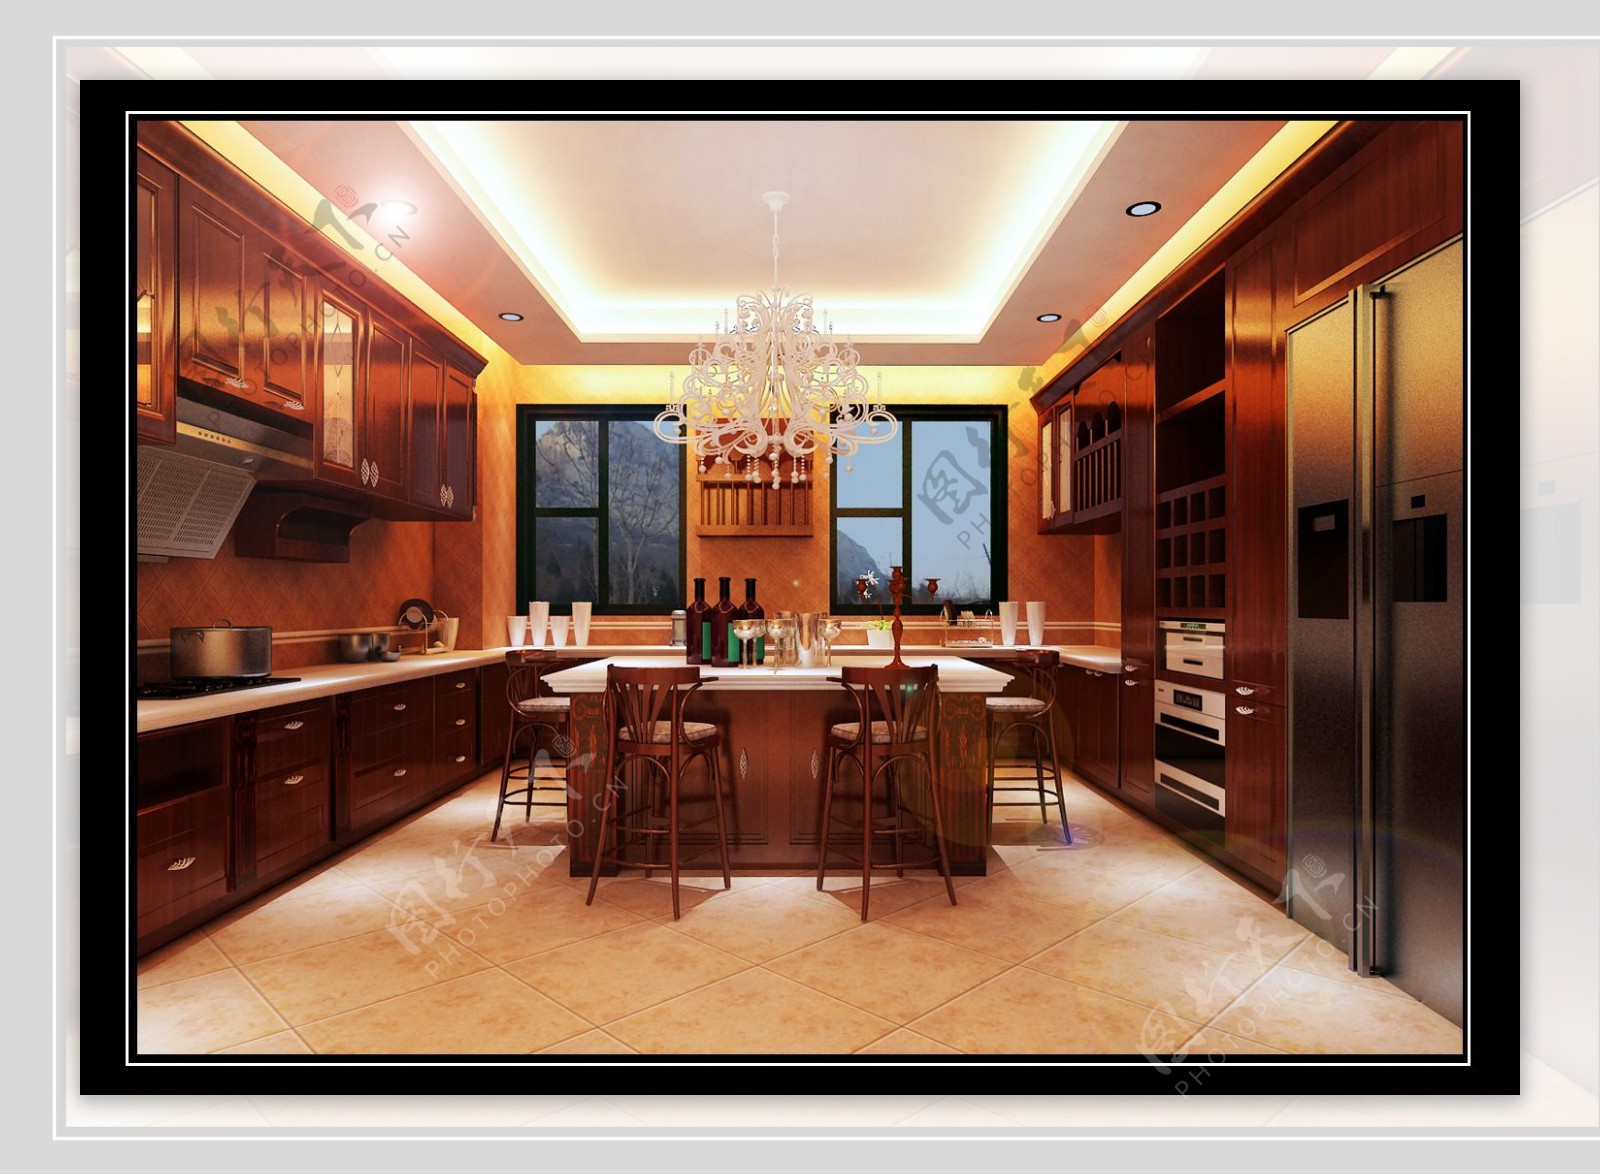 豪华欧式厨房设计效果图图片